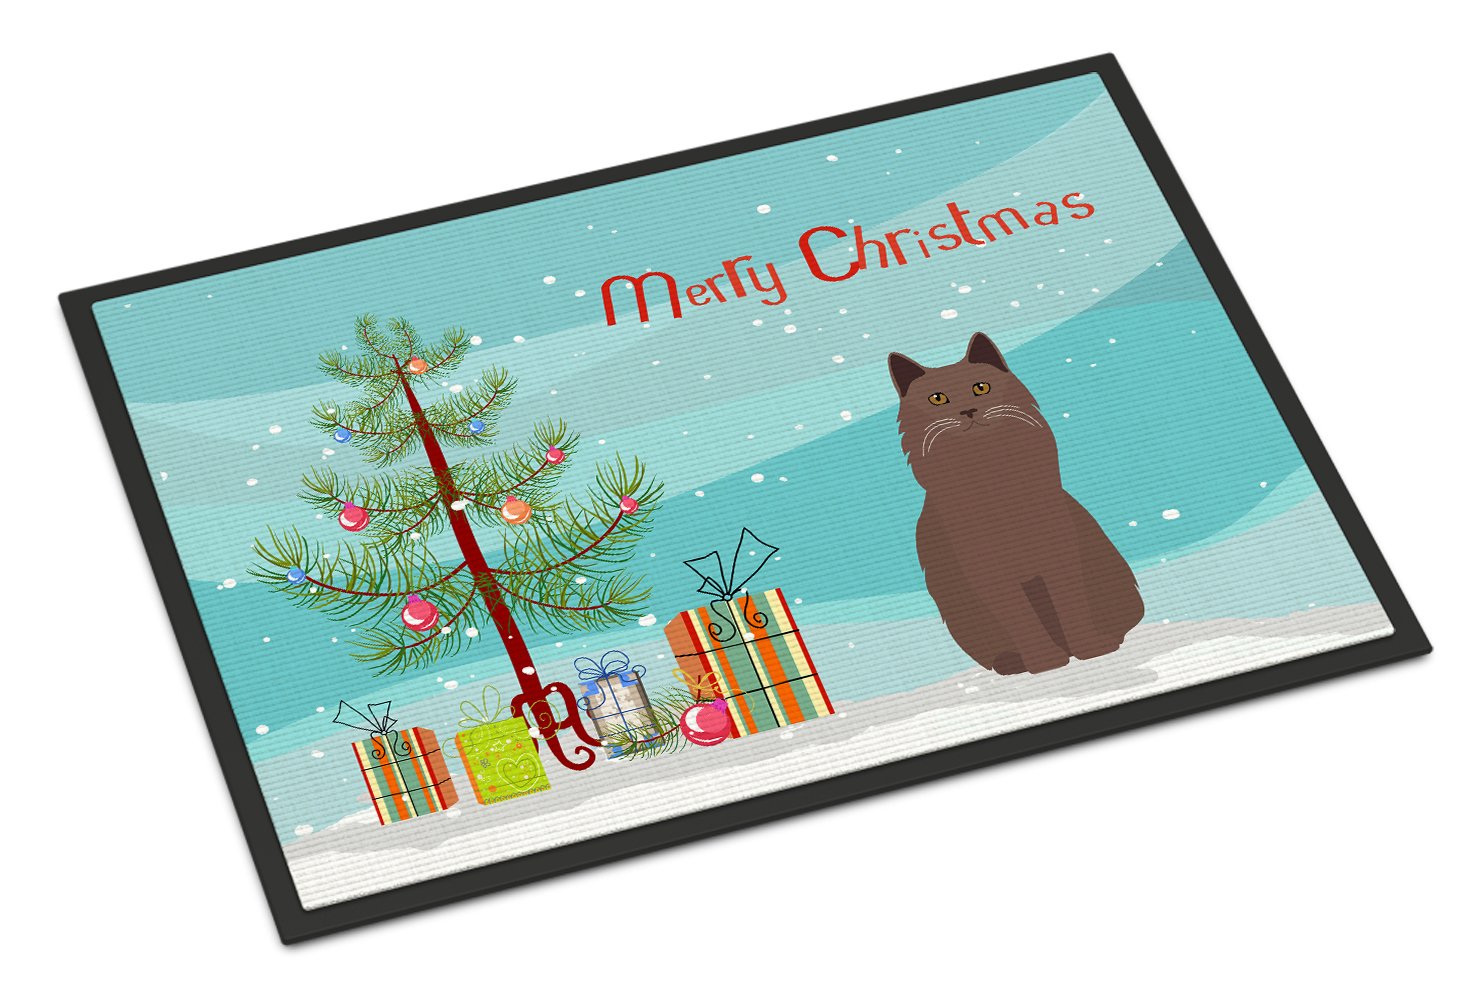 York Chocolate Cat Merry Christmas Indoor or Outdoor Mat 24x36 CK4810JMAT by Caroline's Treasures